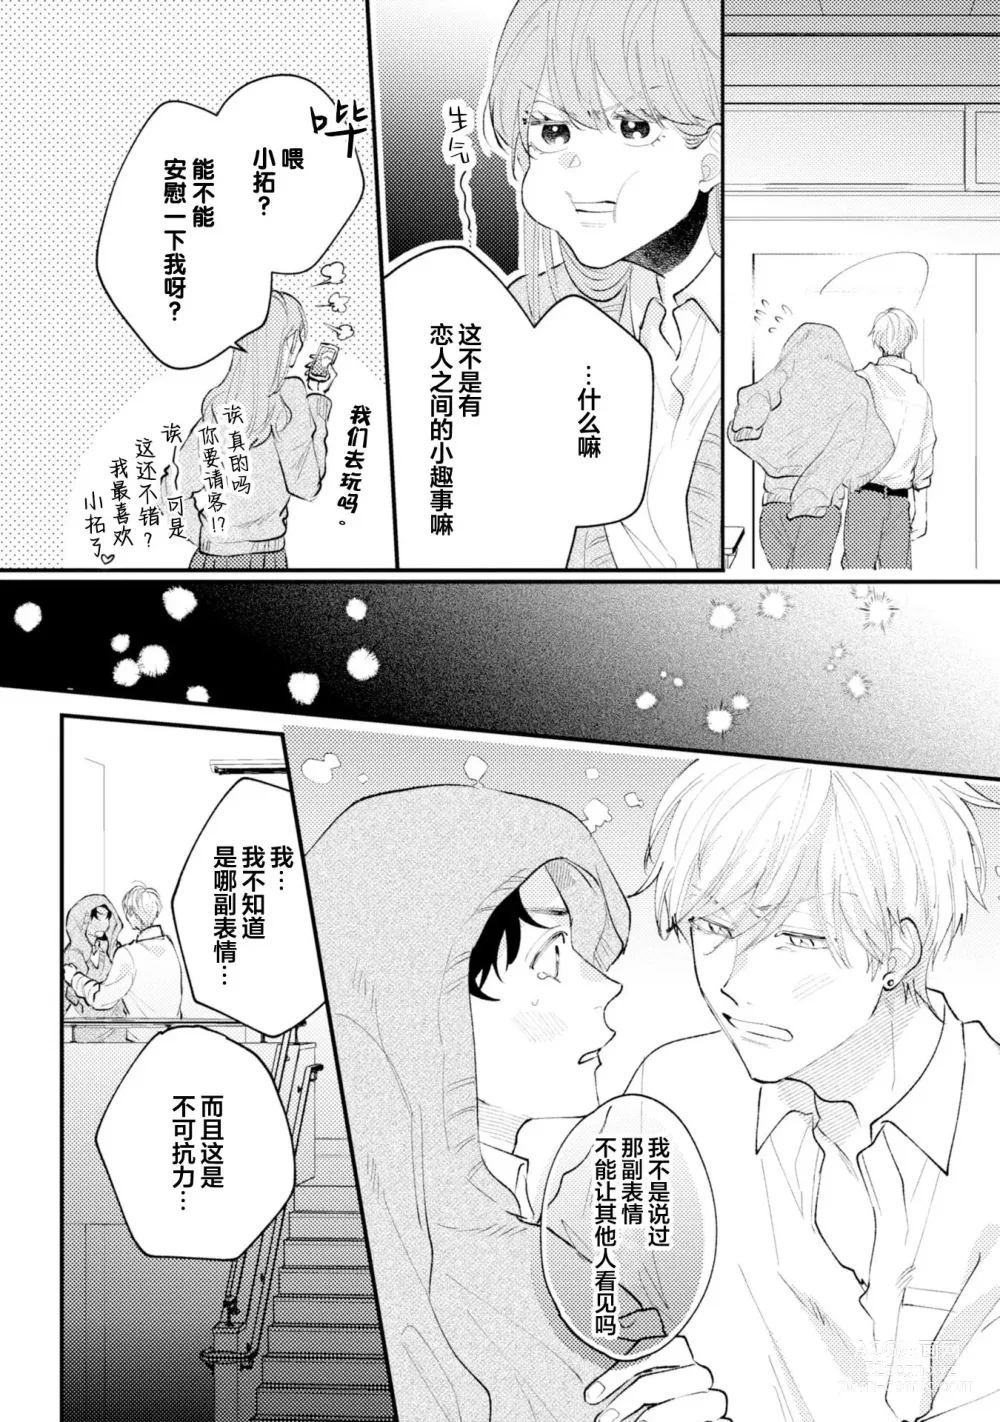 Page 220 of manga 眼泪与爱恋、都只属于我